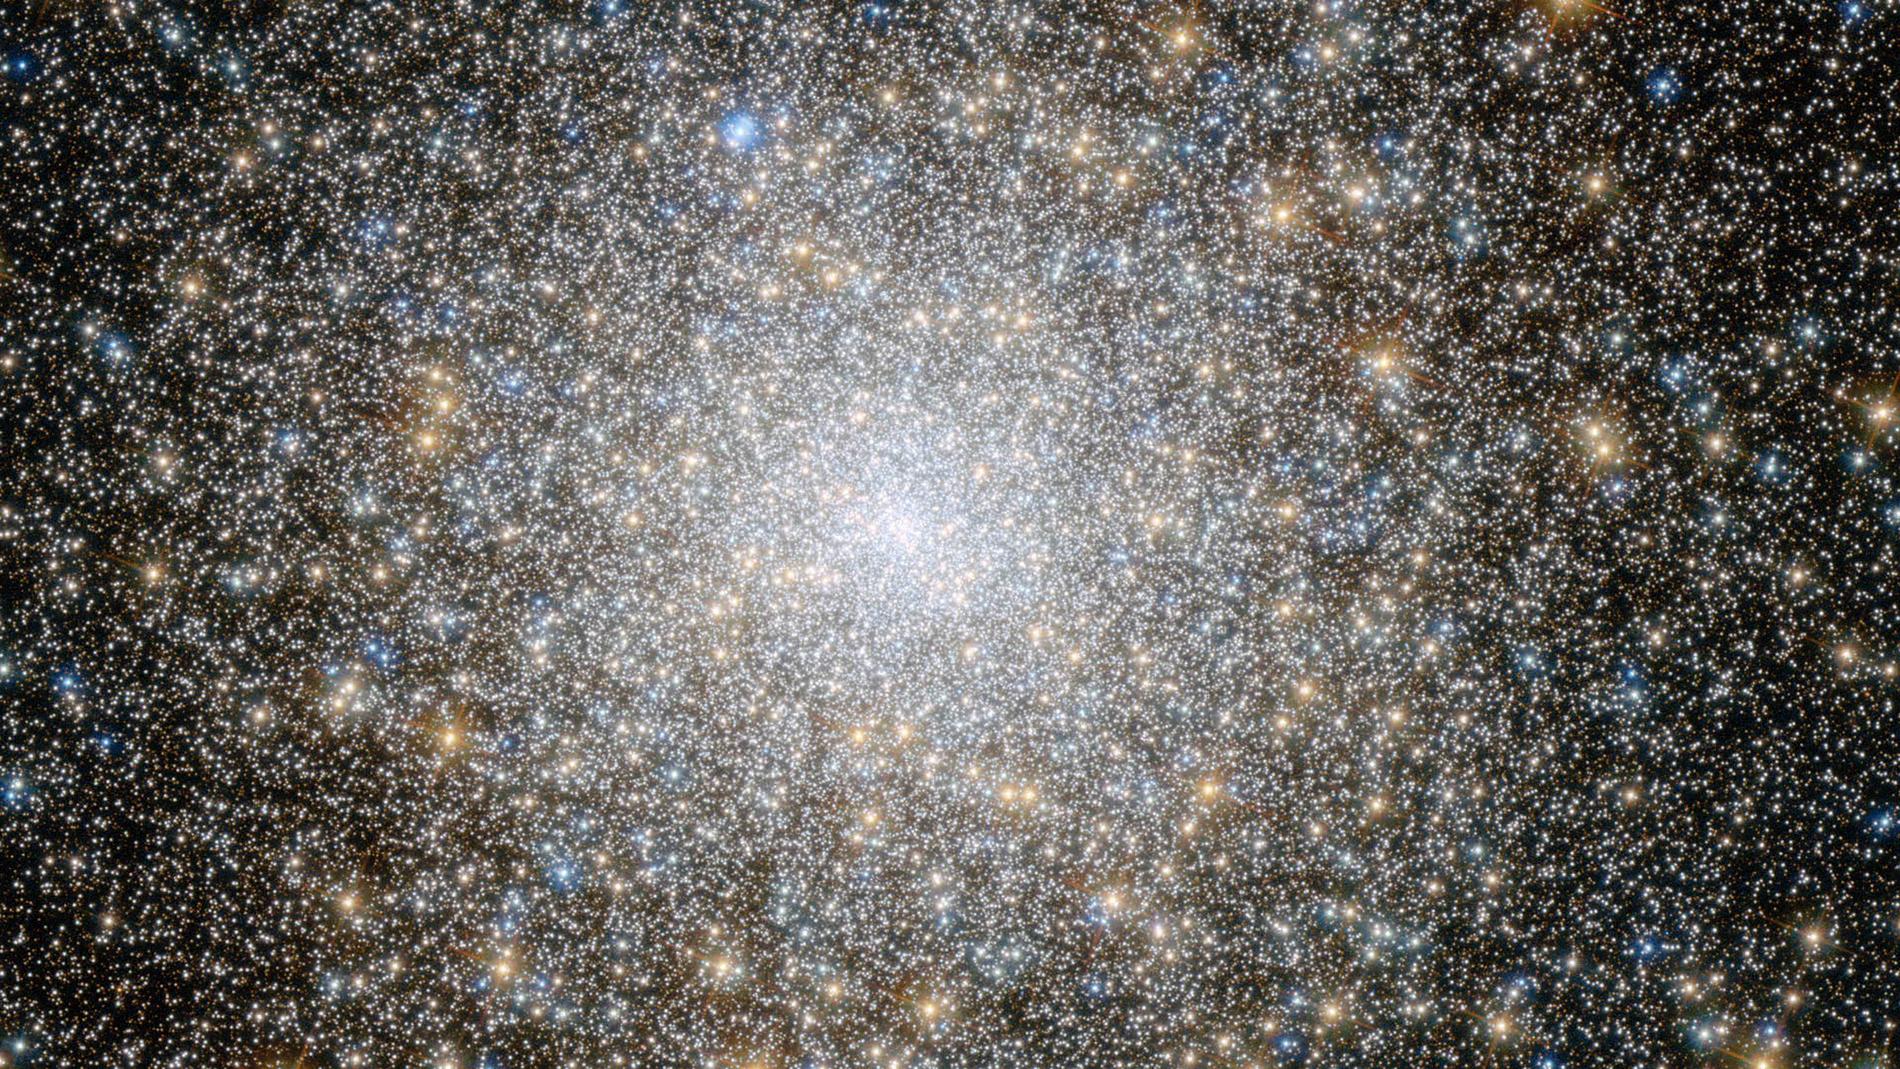 Universum tycks kanske inte expandera på samma vis i alla riktningar, utifrån forskares röntgenstudier av galaxkluster. Bilden visar galaxklustret Messier 15, på en bild från rymdteleskopet Hubble. Arkivbild.